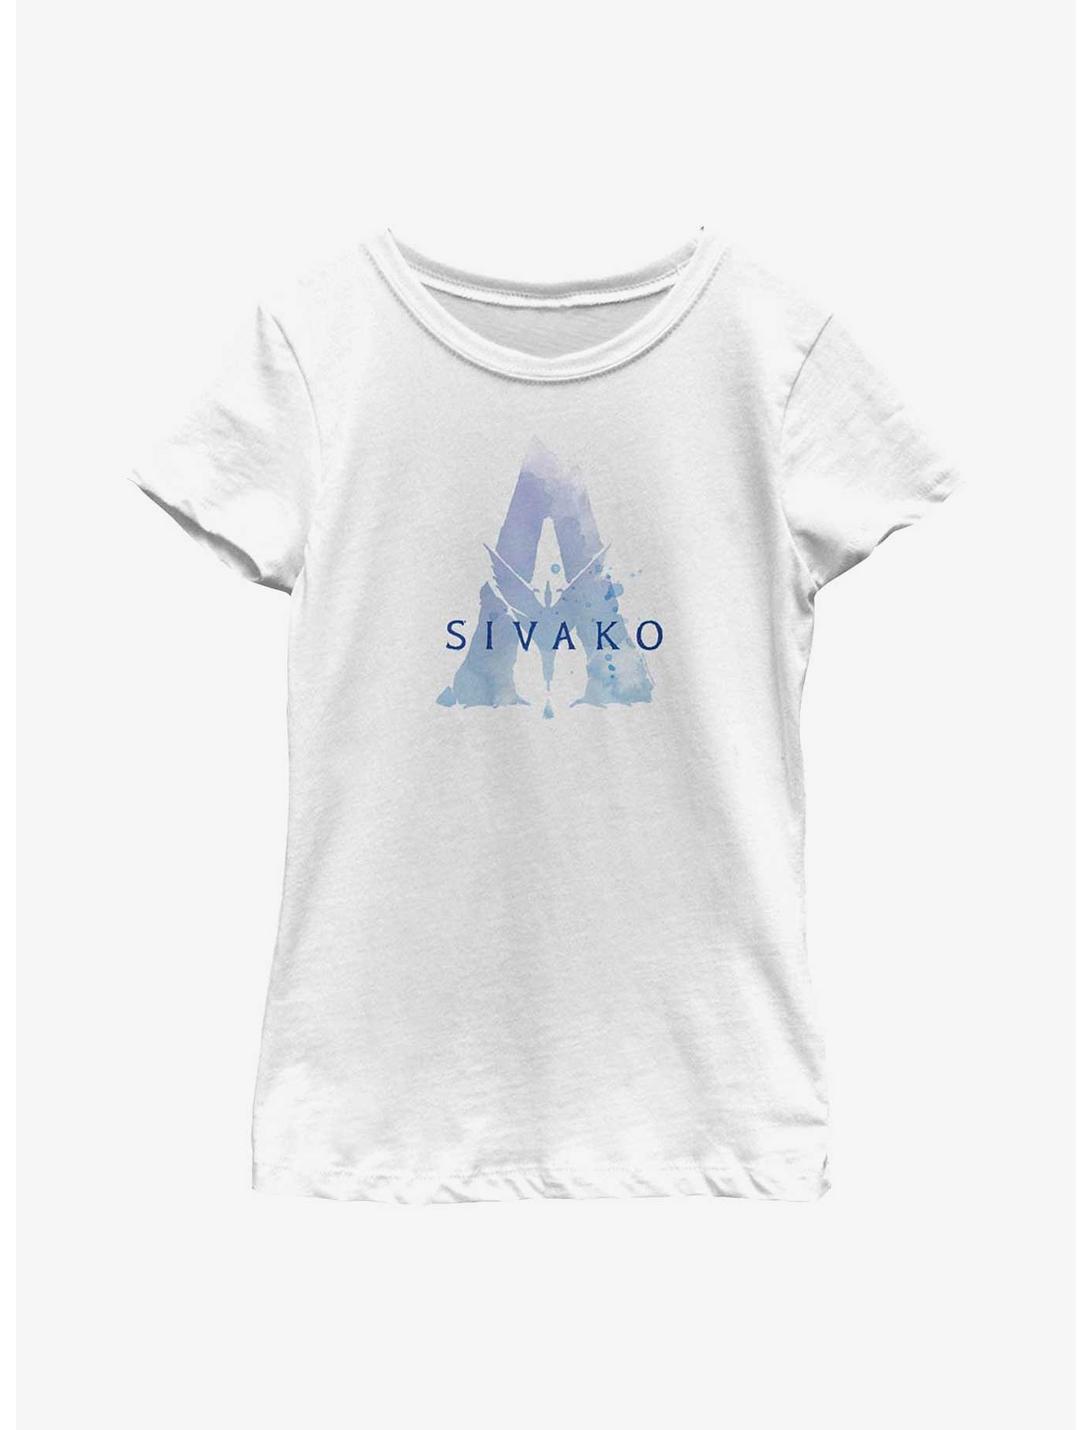 Avatar Sivako Badge Youth Girls T-Shirt, WHITE, hi-res